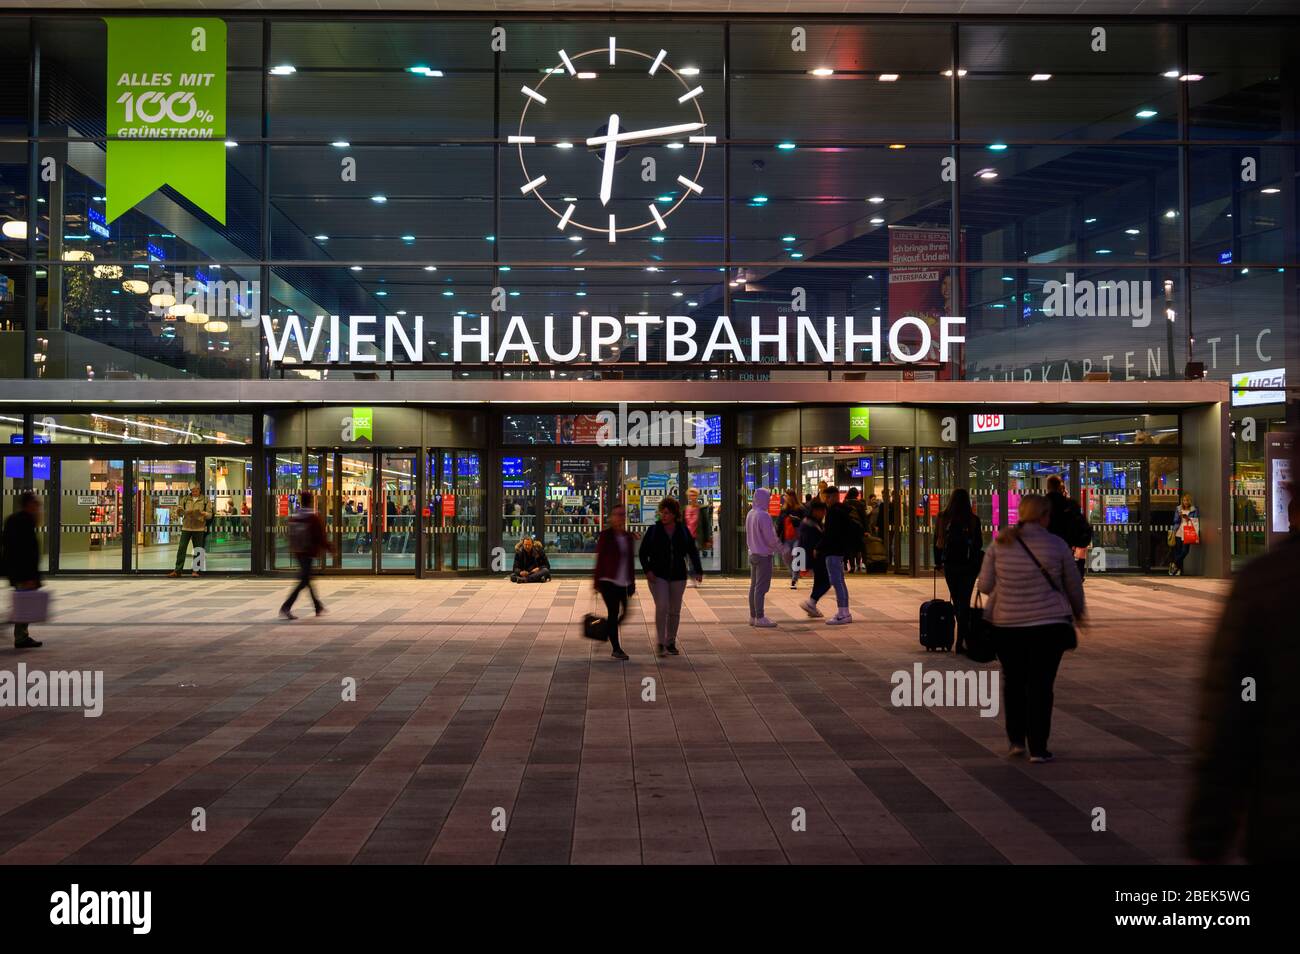 Viena, Austria. 2019/10/29. 'Wien Hauptbahnhof' – Estación Principal de Viena, la estación principal de trenes de Viena. Filmado por la noche. Foto de stock